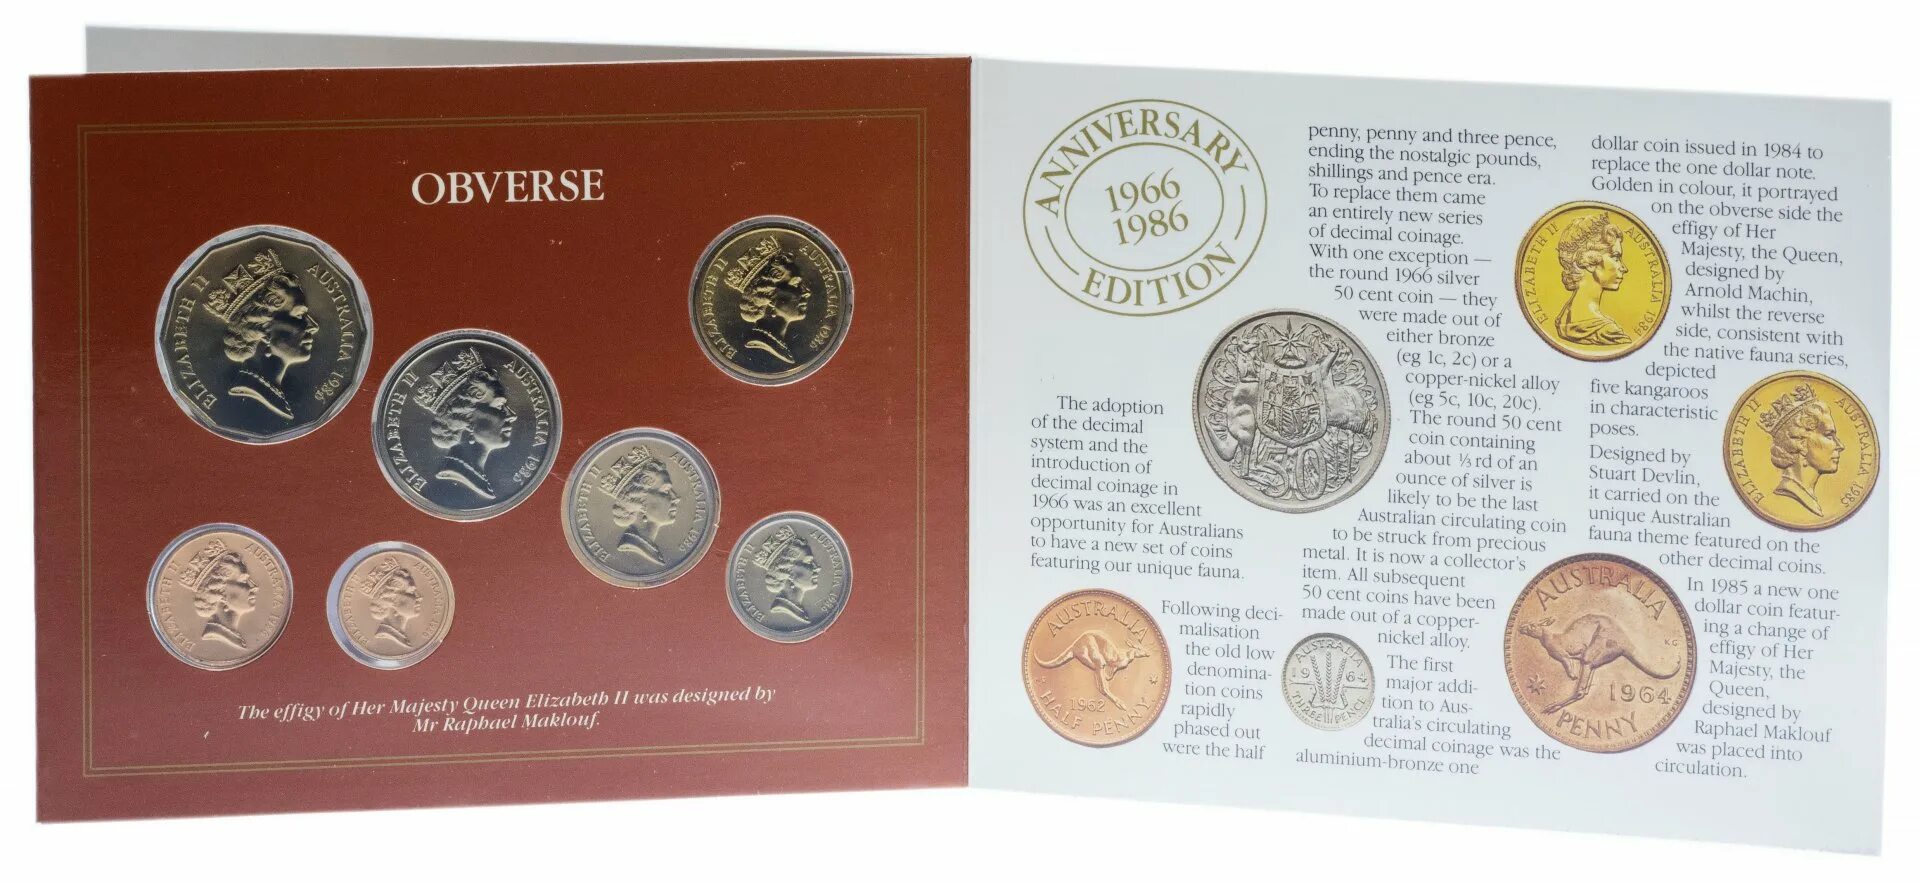 Ton coin цена в рублях на сегодня. Годовой набор монет Австралия 1997. Буклеты для монет. Буклет для набора монет. Набор монет Китая.